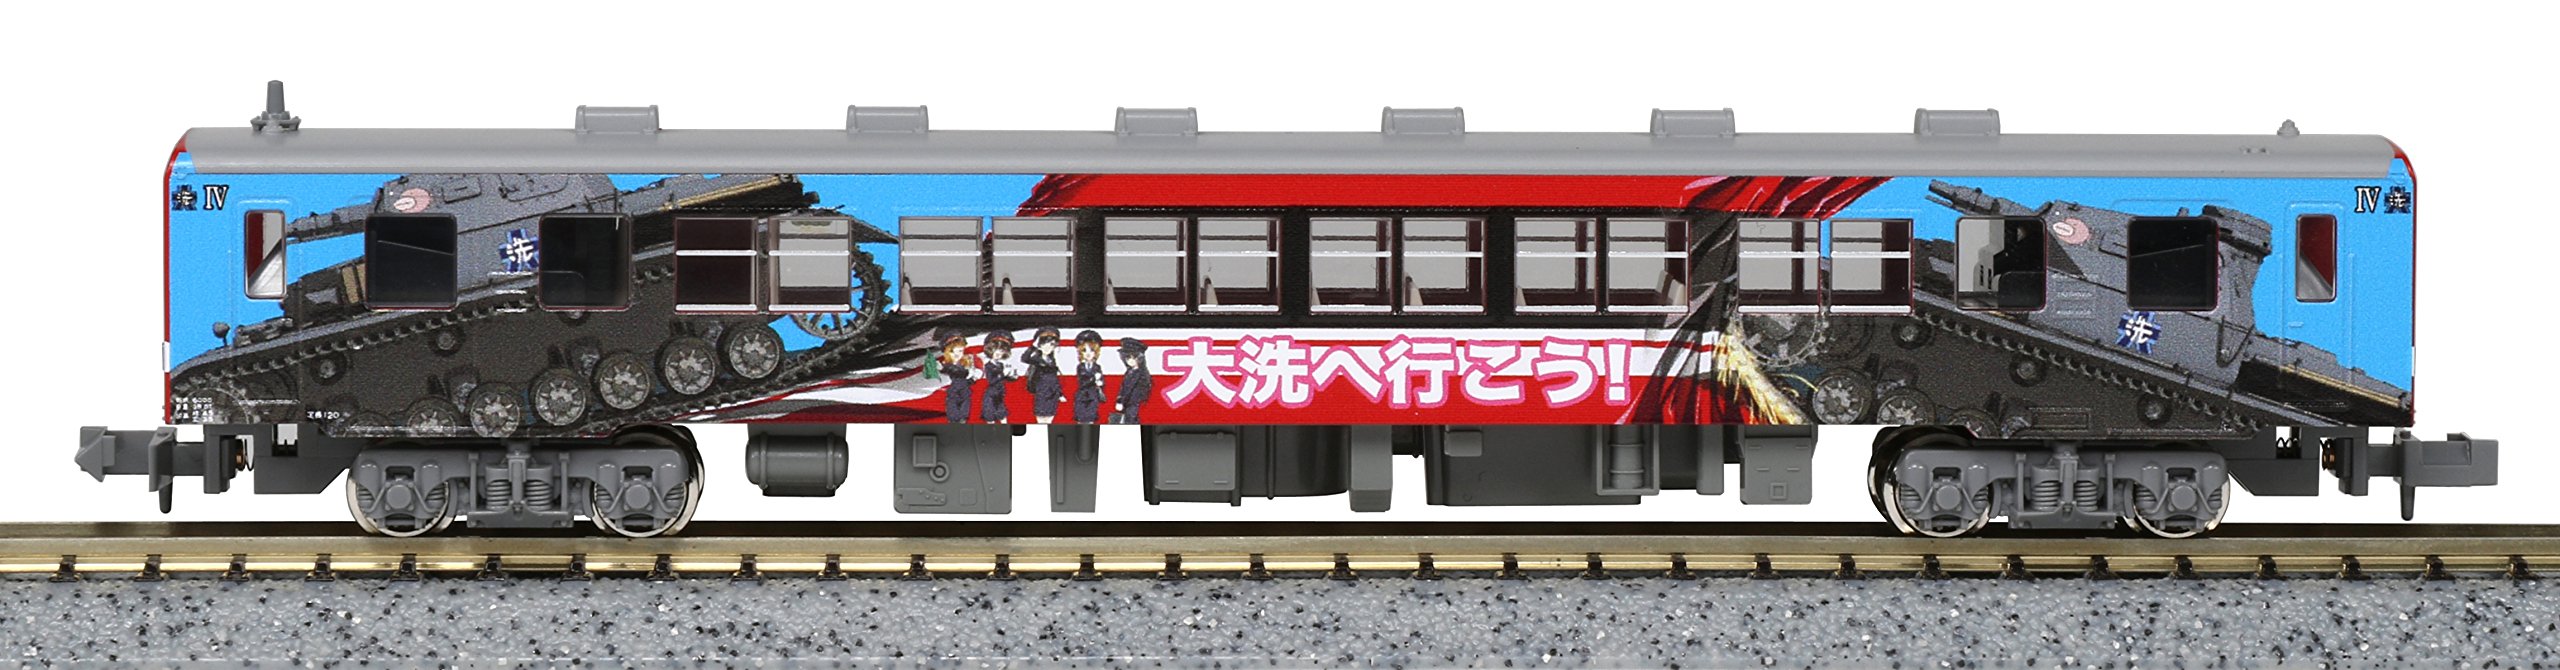 Kato Girls & Panzer Spec N Gauge Kashima 6006 Wrapped Train Diesel Car Model 16001-5